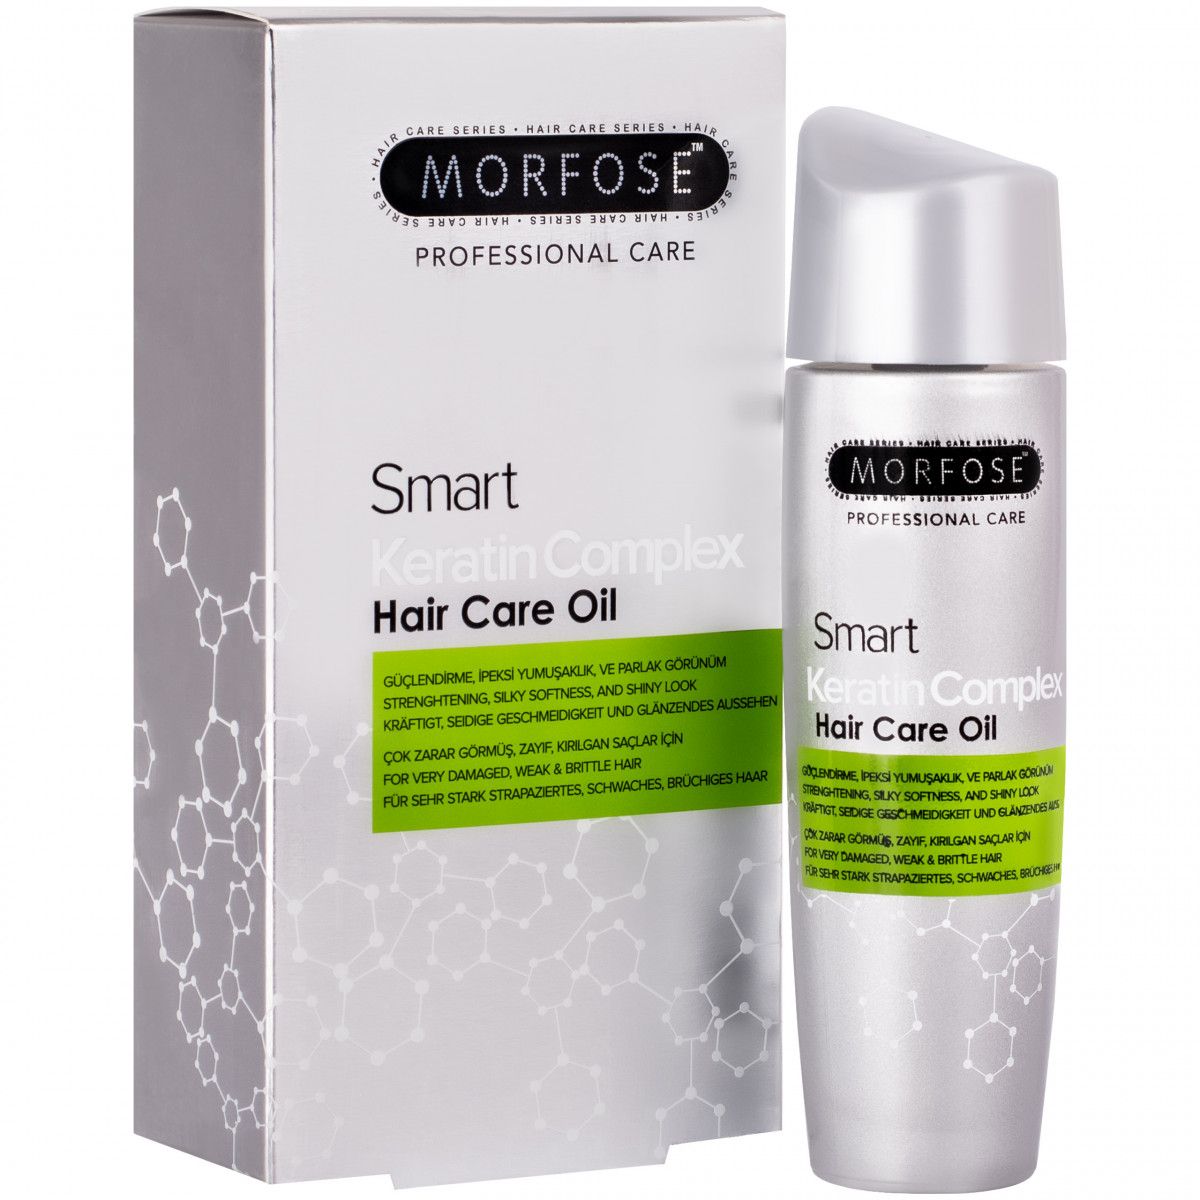 Morfose Smart Keratin Complex Hair Care Oil – odbudowujący olejek keratynowy do włosów zniszczonych, 100 ml